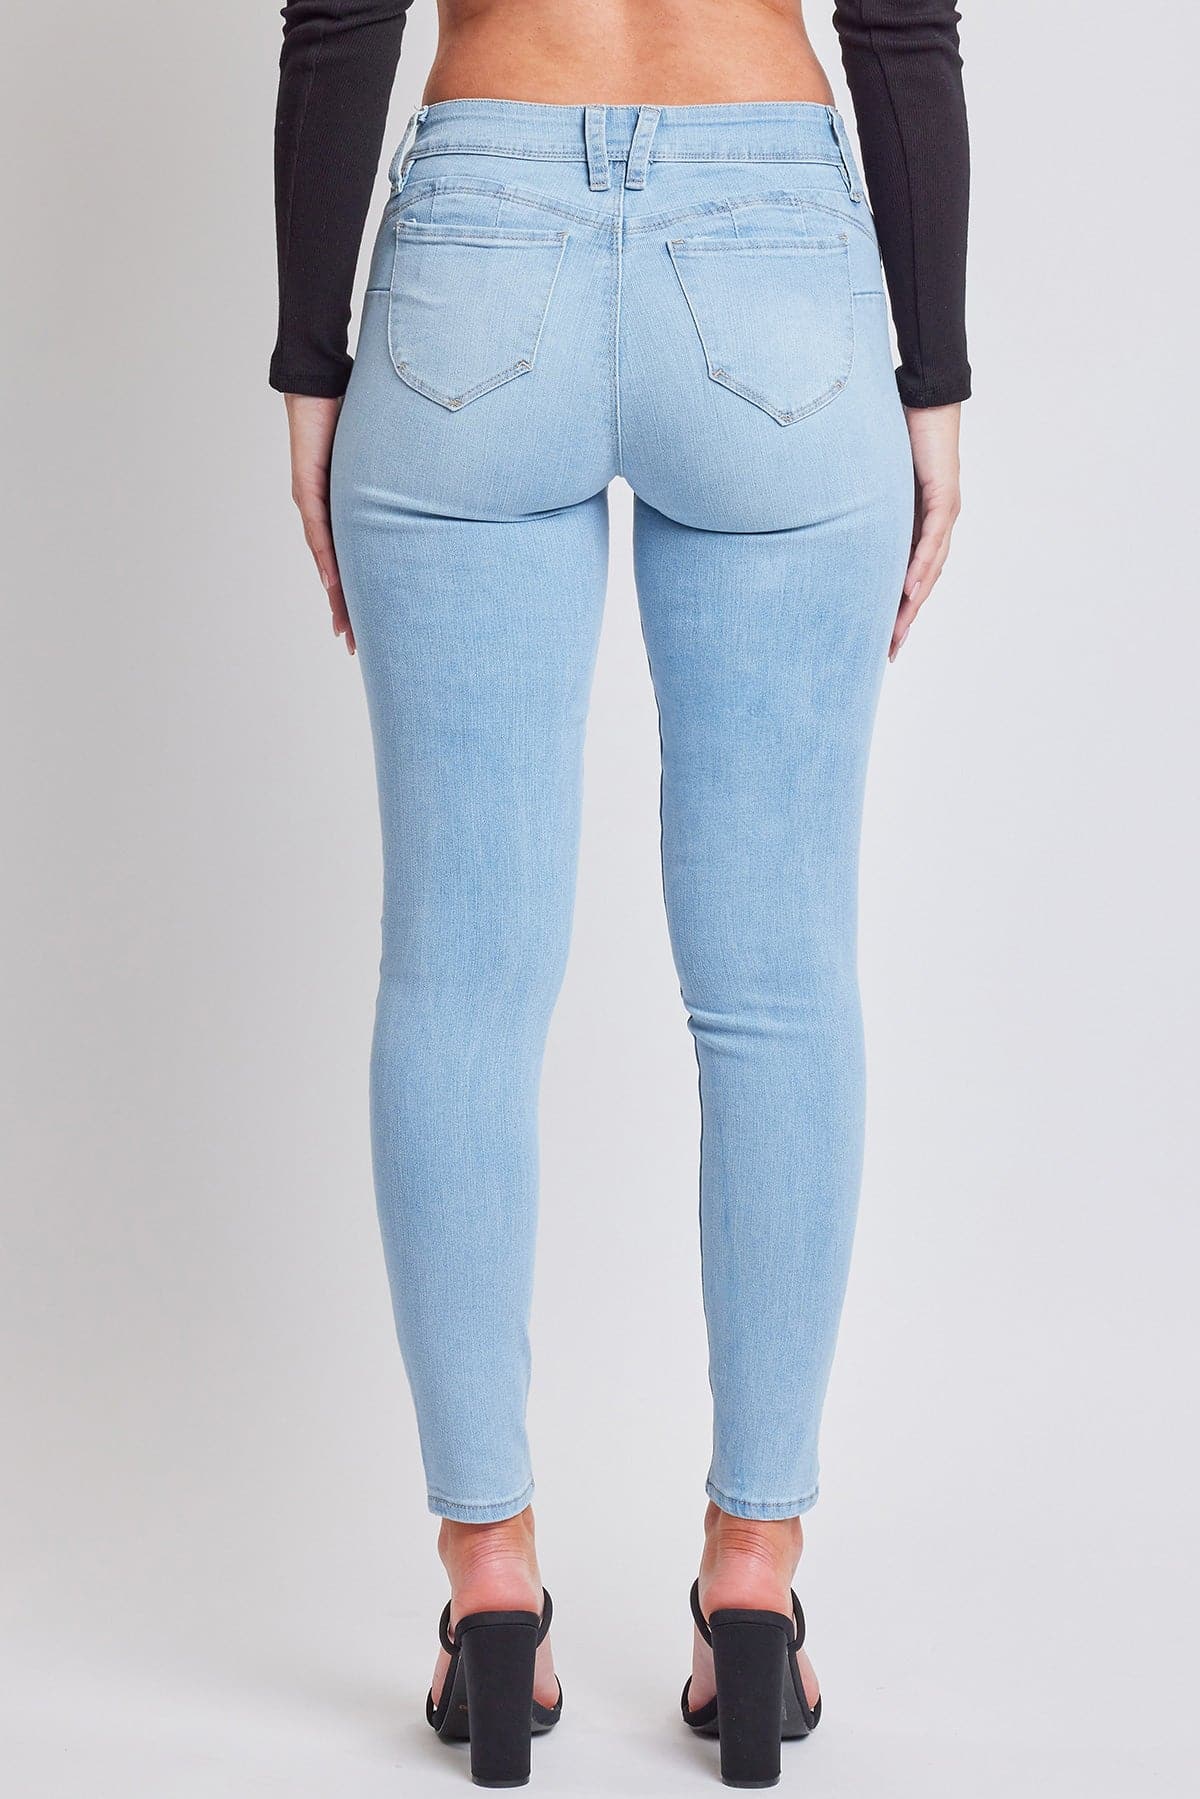 Women's Sustainable WannaBettaButt Skinny Jeans